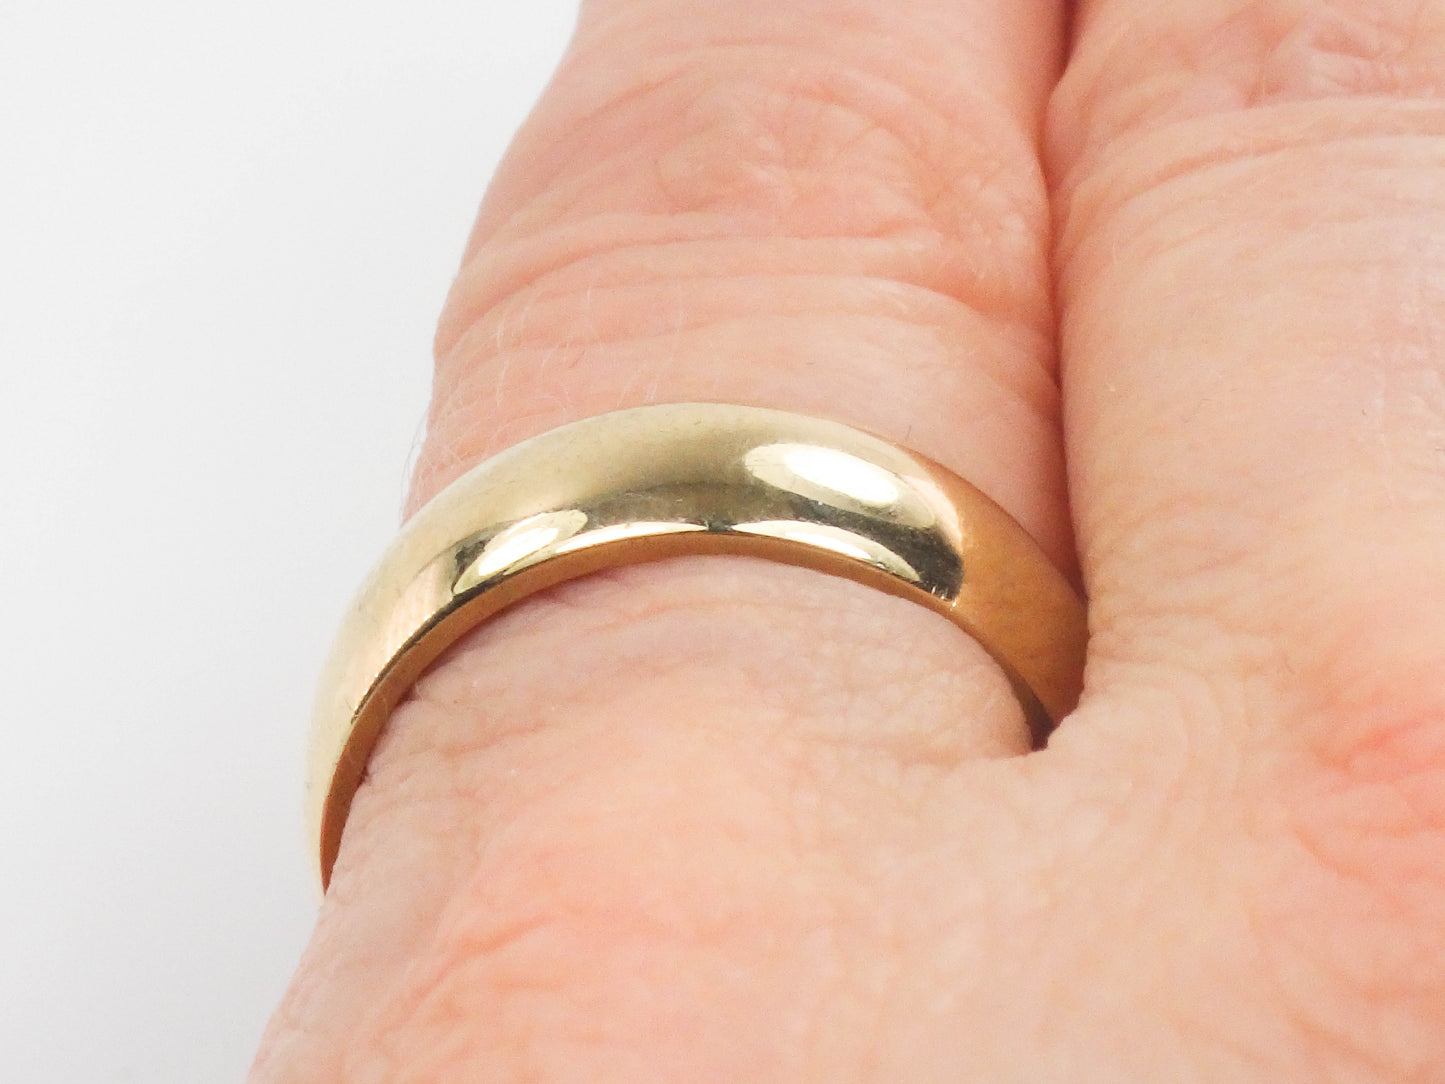 Vintage 14k Yellow Gold Plain Polished Wedding Band - 6.7 MM Wedding Ring - Size 7.5